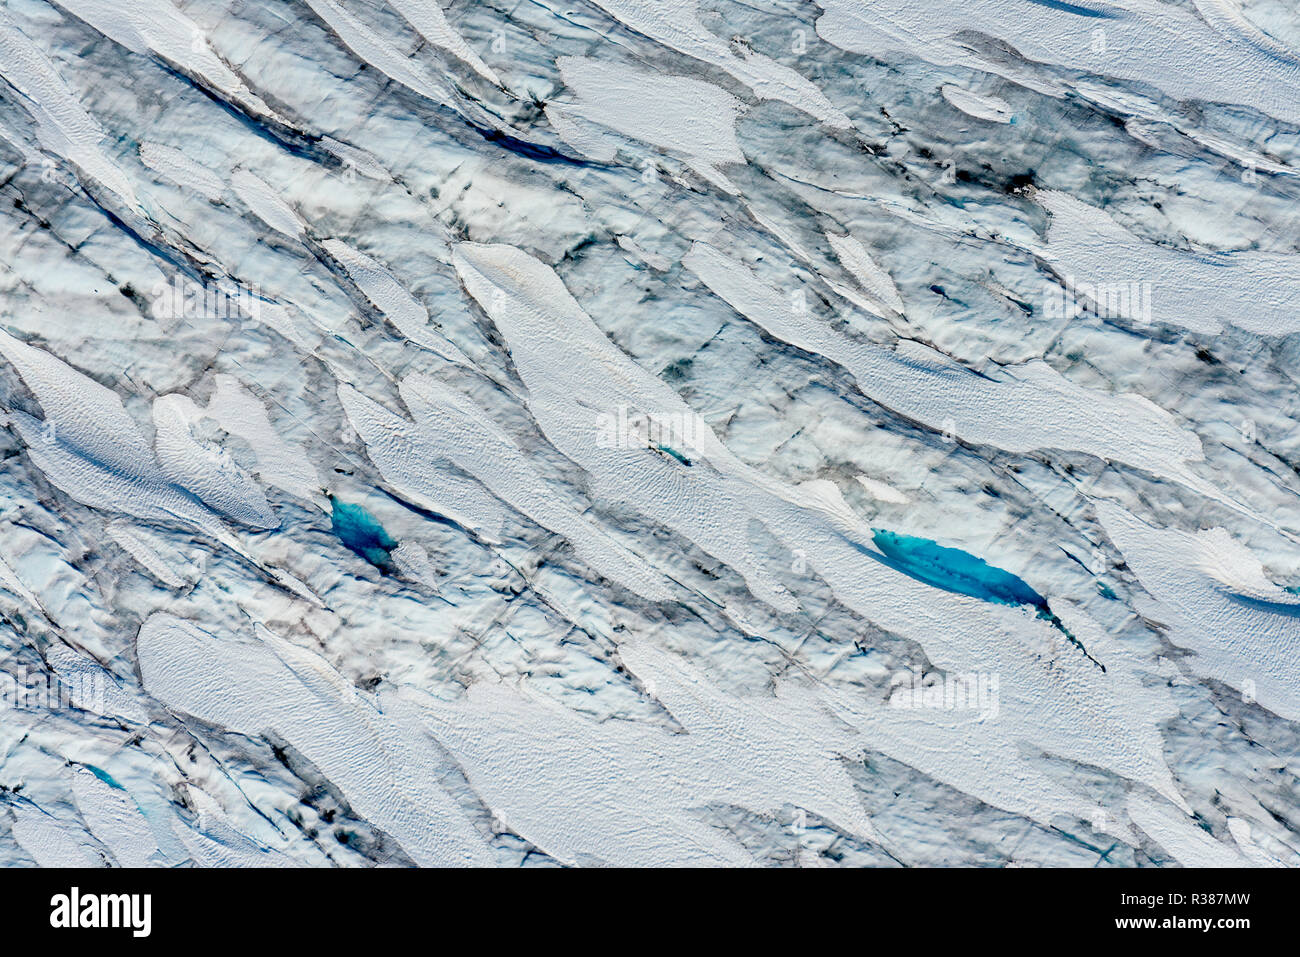 Variazioni sorprendenti di blu su questa immagine aerea di Tunsbergdalsbreen, Norvegia più lunga del braccio sul ghiacciaio del ghiaccio Jostedalsbreen cap. È Tunsbergdalsbreen Foto Stock